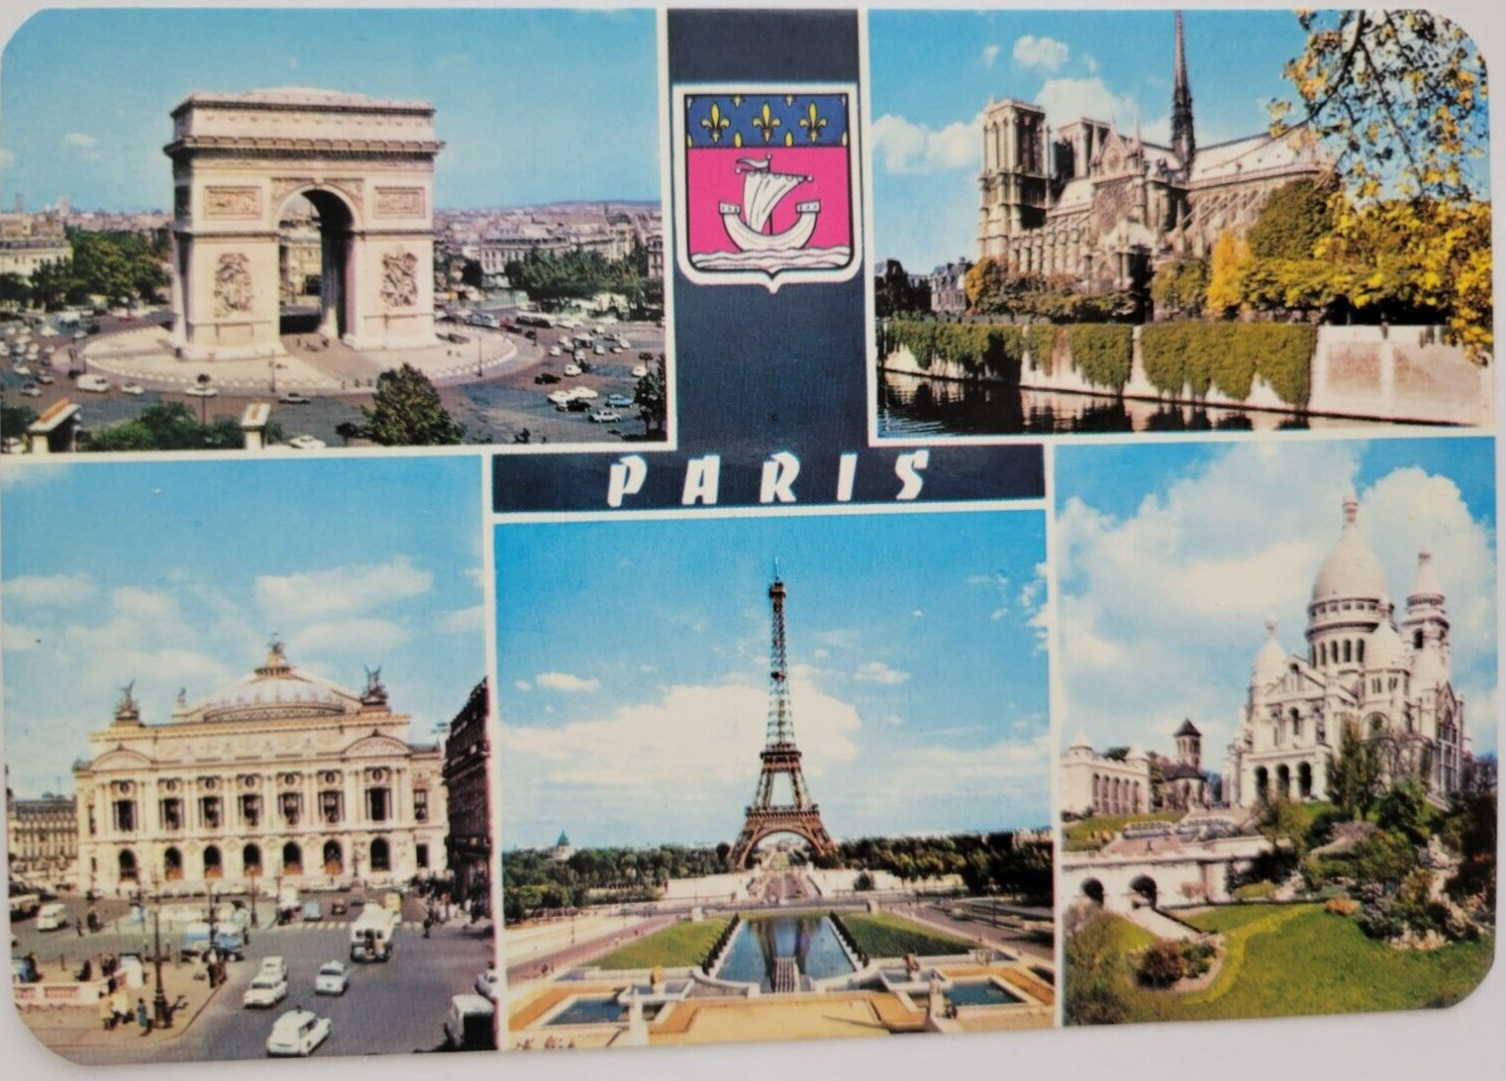 Paris France Multi View Historical Sites Postcard 6X4 Unposted